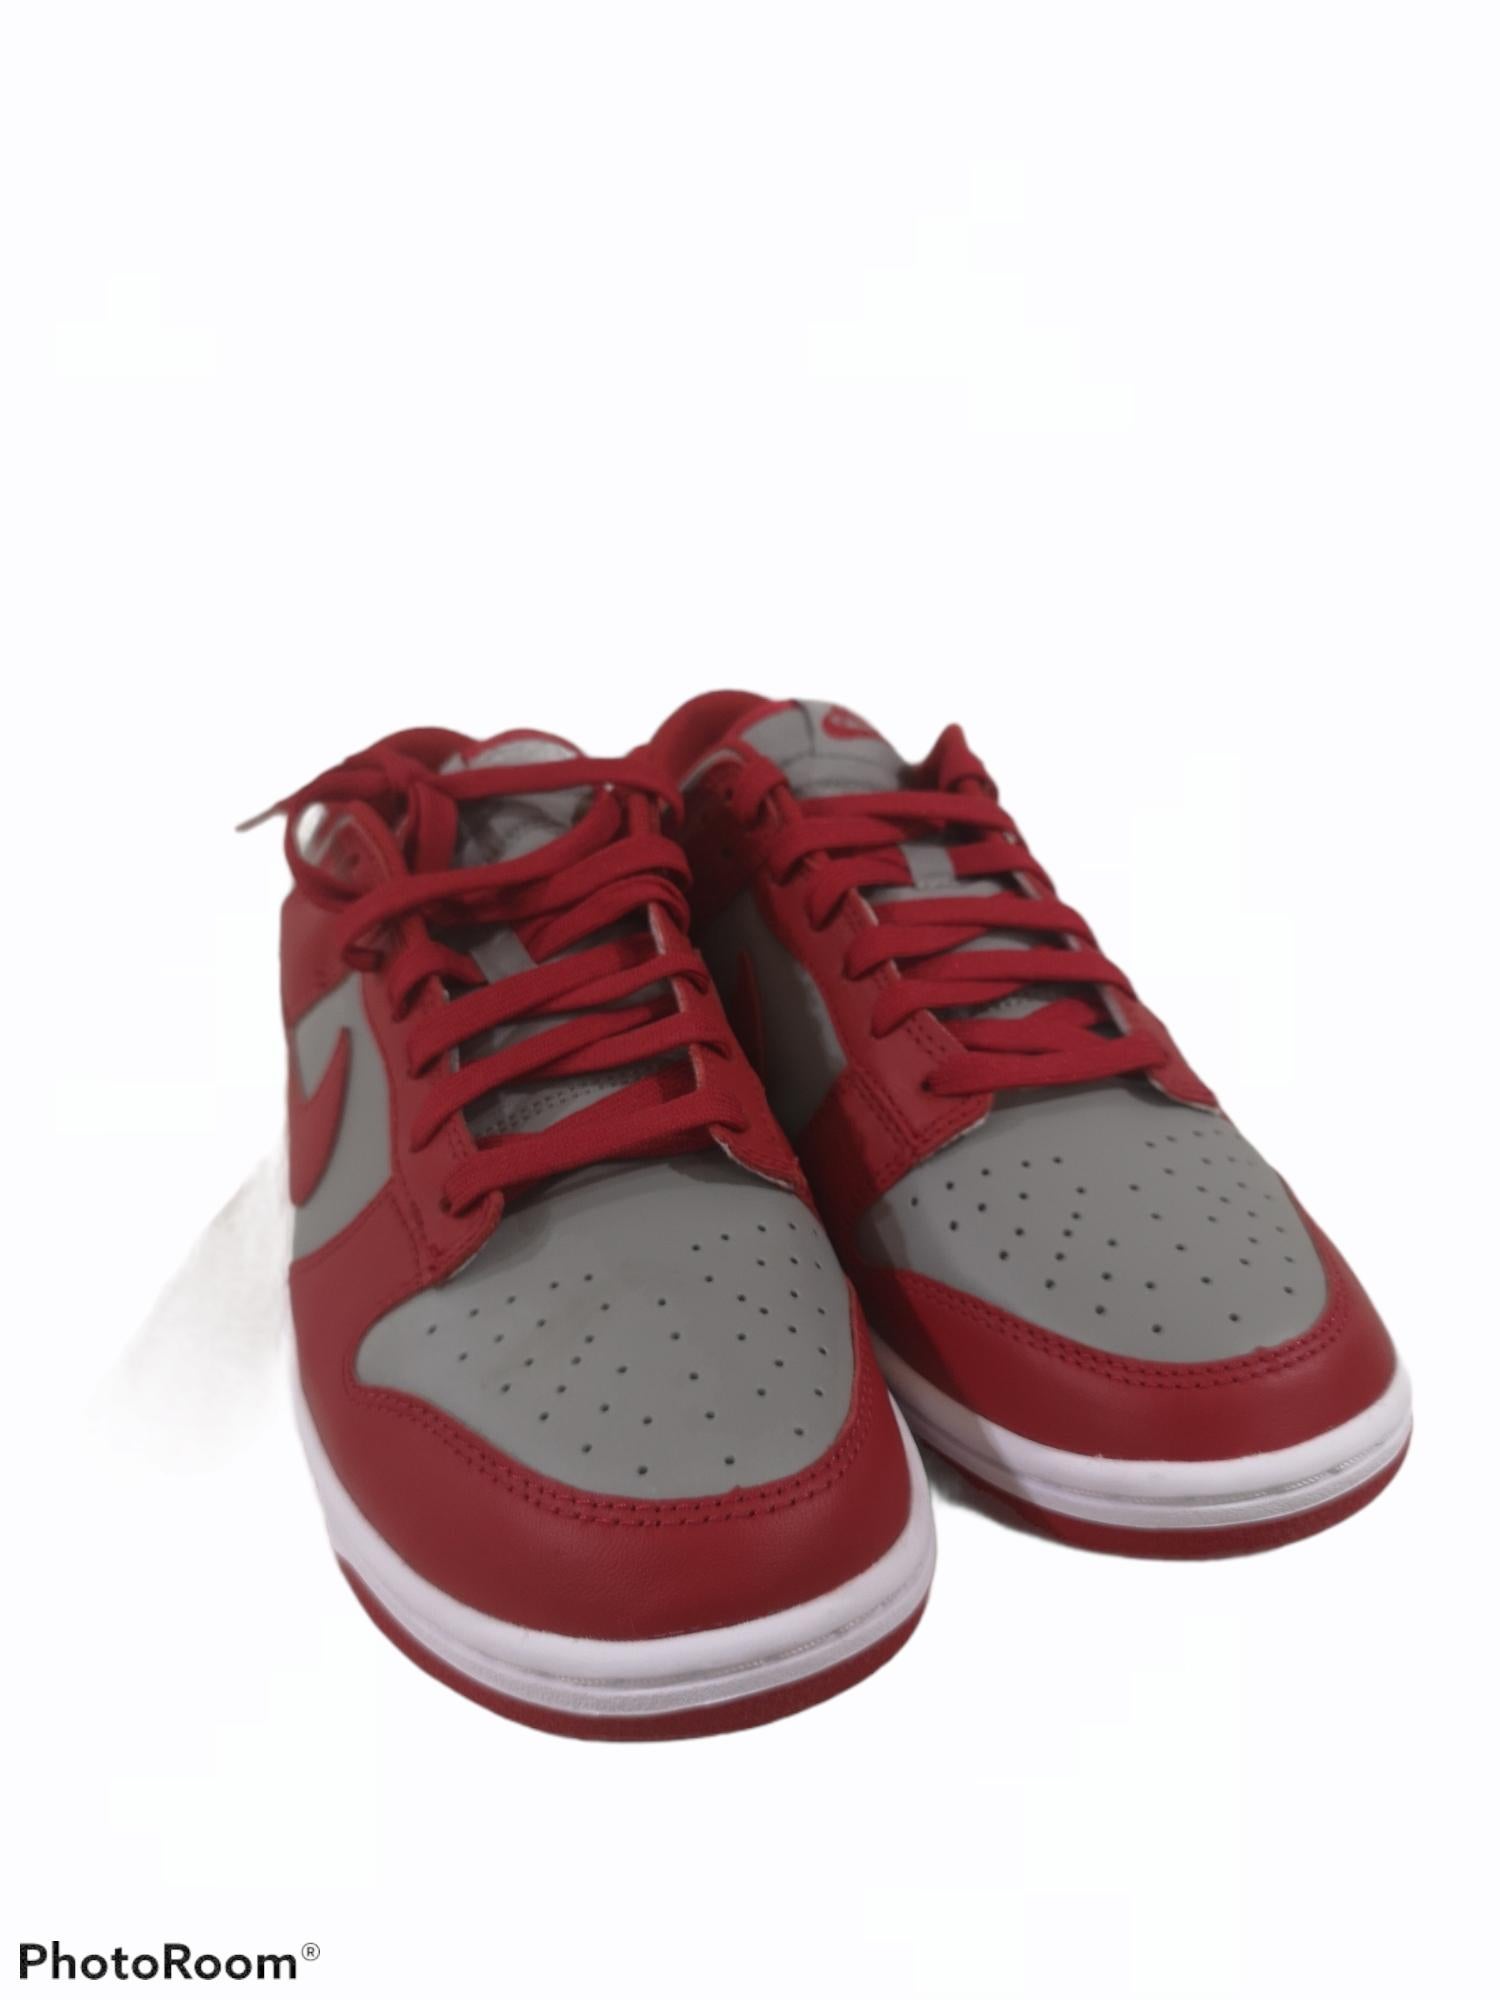 Men's Air Jordan low red grey